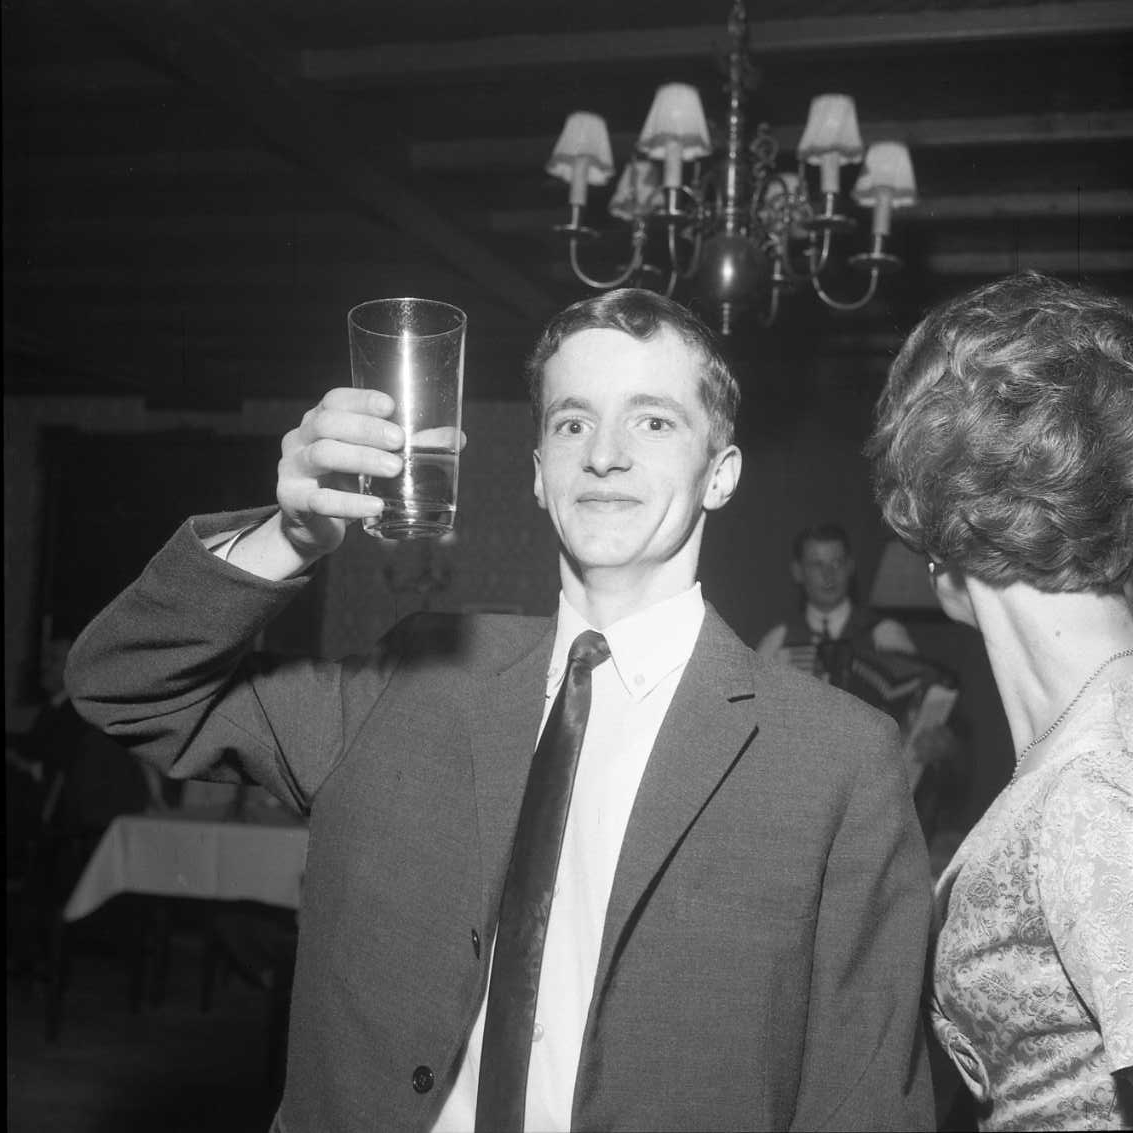 En ung och glad man i kostym och slips lyfter ett glas som en skål mot fotografen. En kvinna till höger, delvis ur bild, är vänd med blicken åt andra hållet. Det är ett fotografi i samband med årsmöte för Gränna AIS.